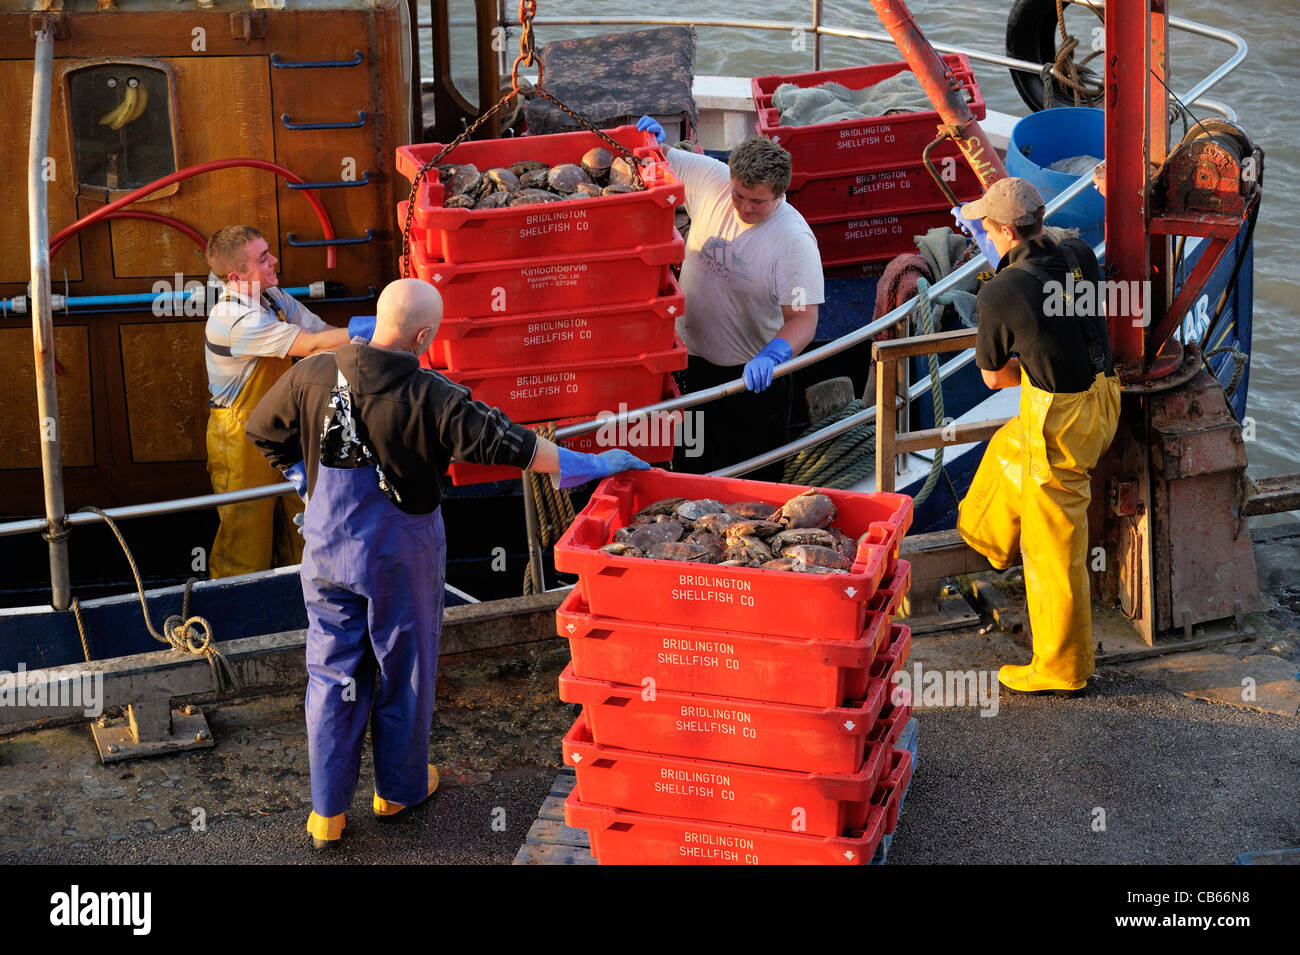 Los pescadores del Mar del Norte descargar captura de cangrejos desde el barco de pesca en adelante de estrellas en el East Yorkshire peces muelle puerto de Bridlington Foto de stock